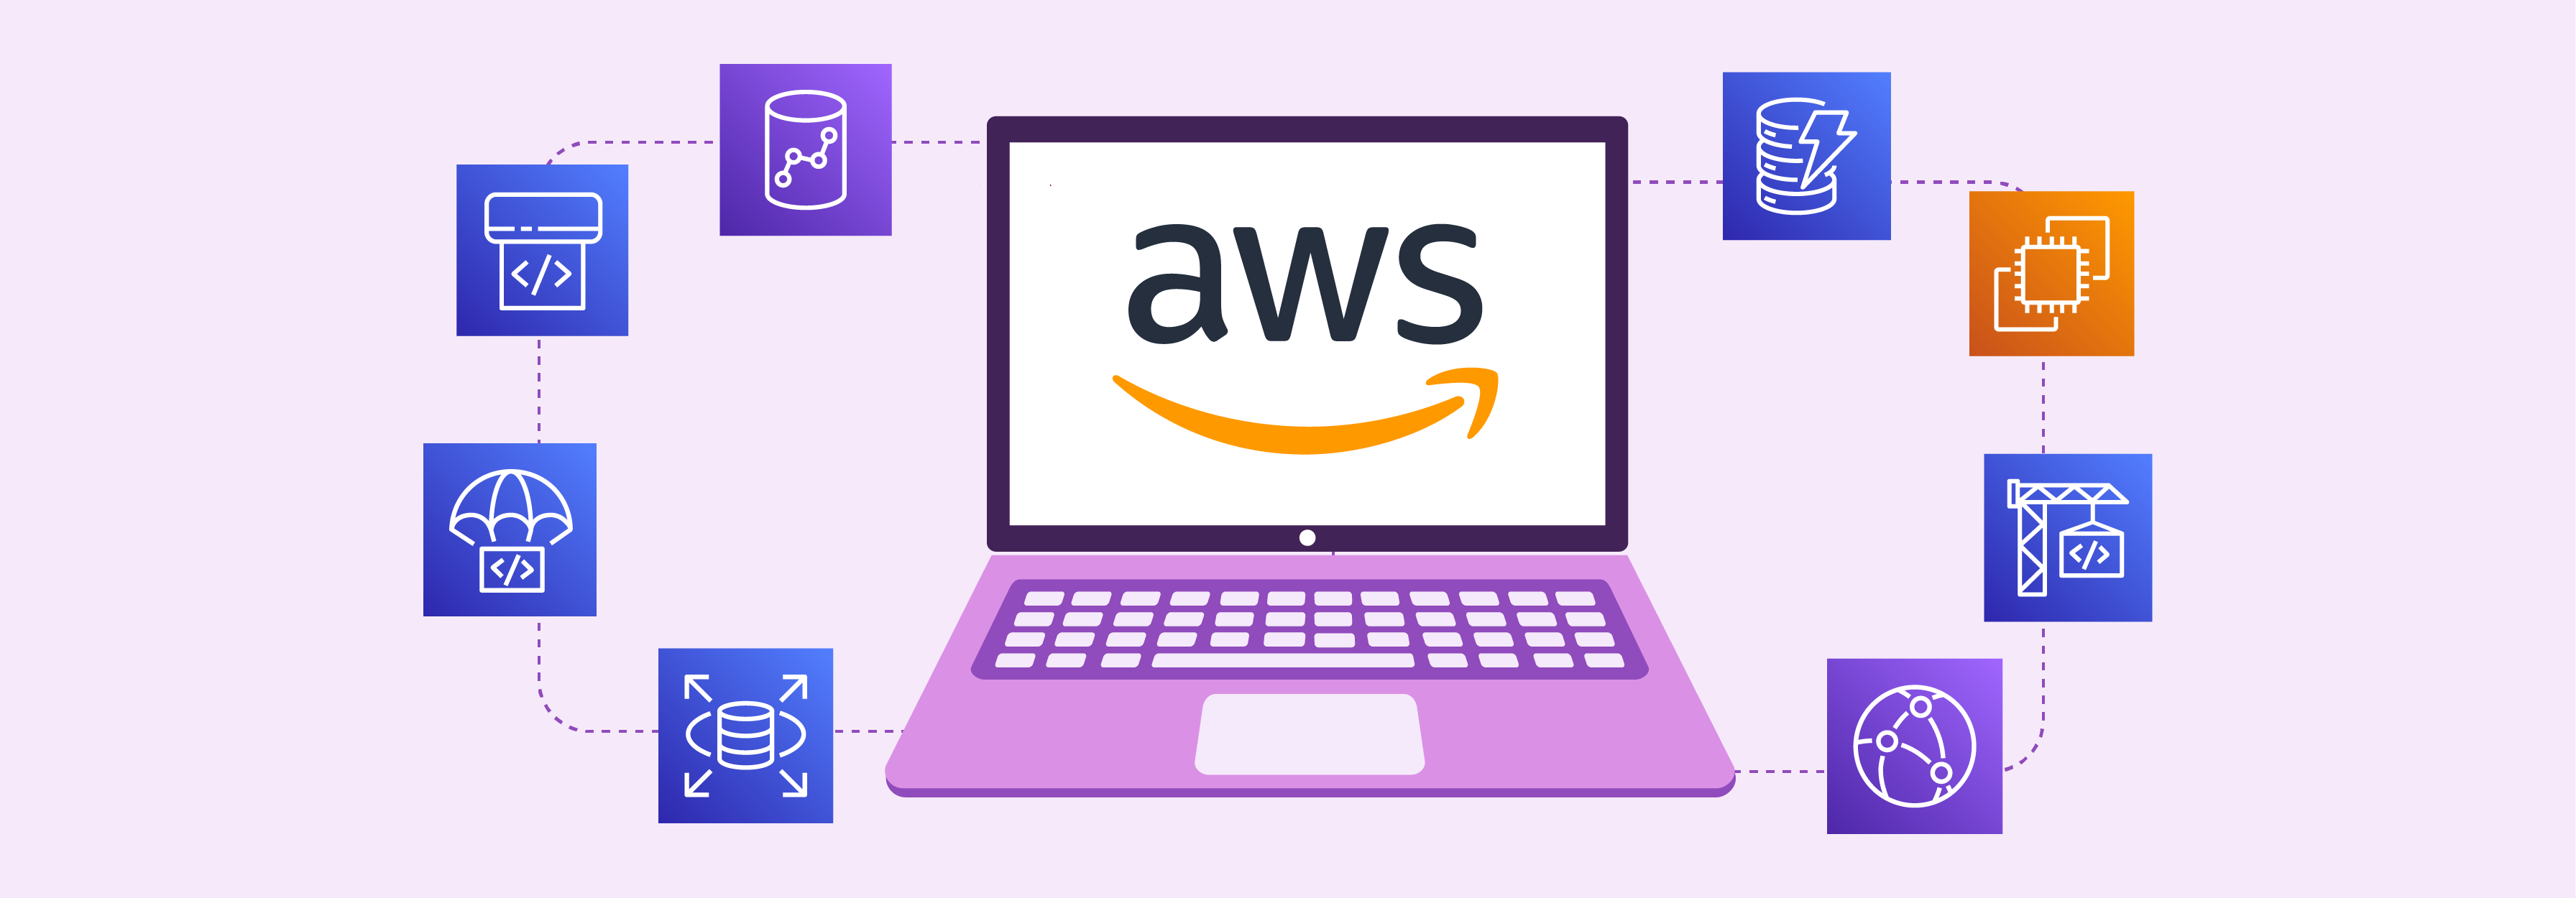 Amazon Web Services vs. Azure vs. Google Cloud: AWS compute power